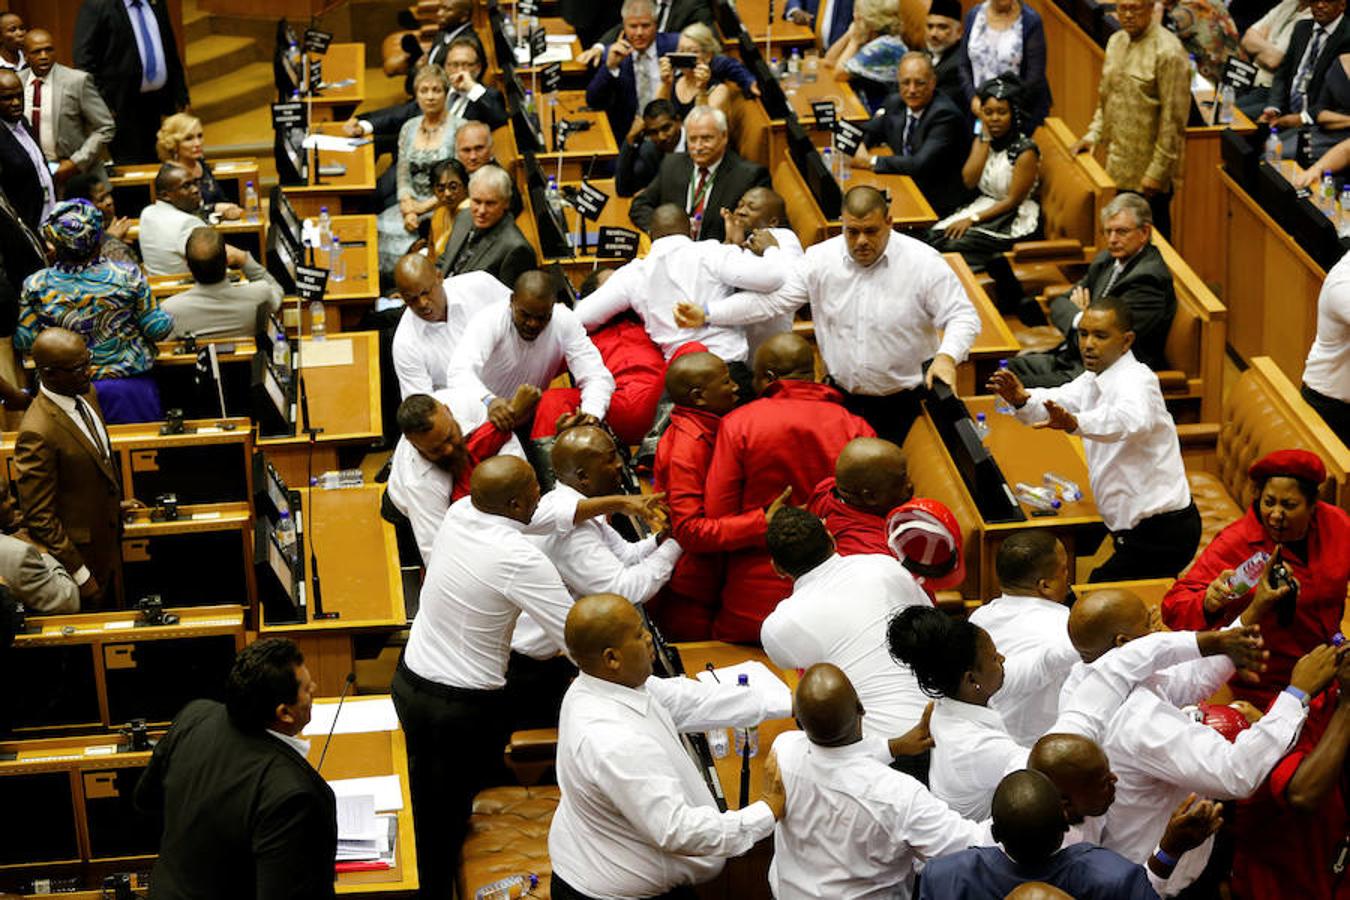 Imágenes de la trifulca entre diputados en el Parlamento de Sudáfrica durante el debate sobre el estado de la nación